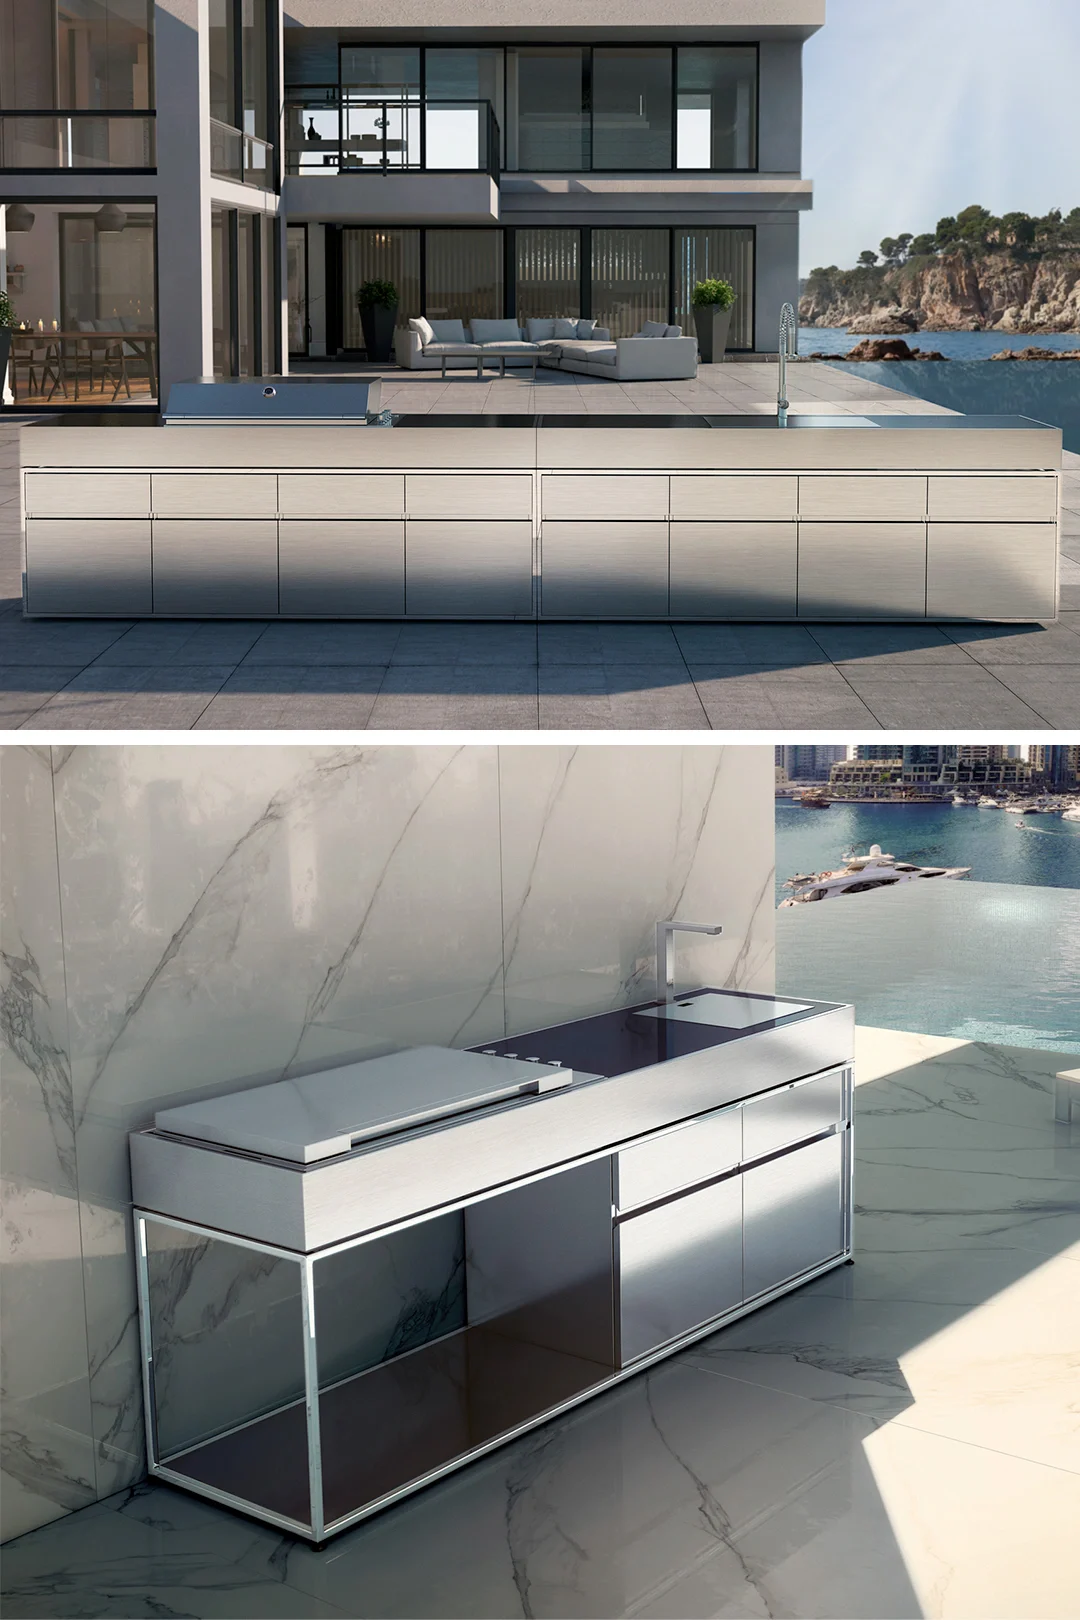 modular outdoor kitchen with sink